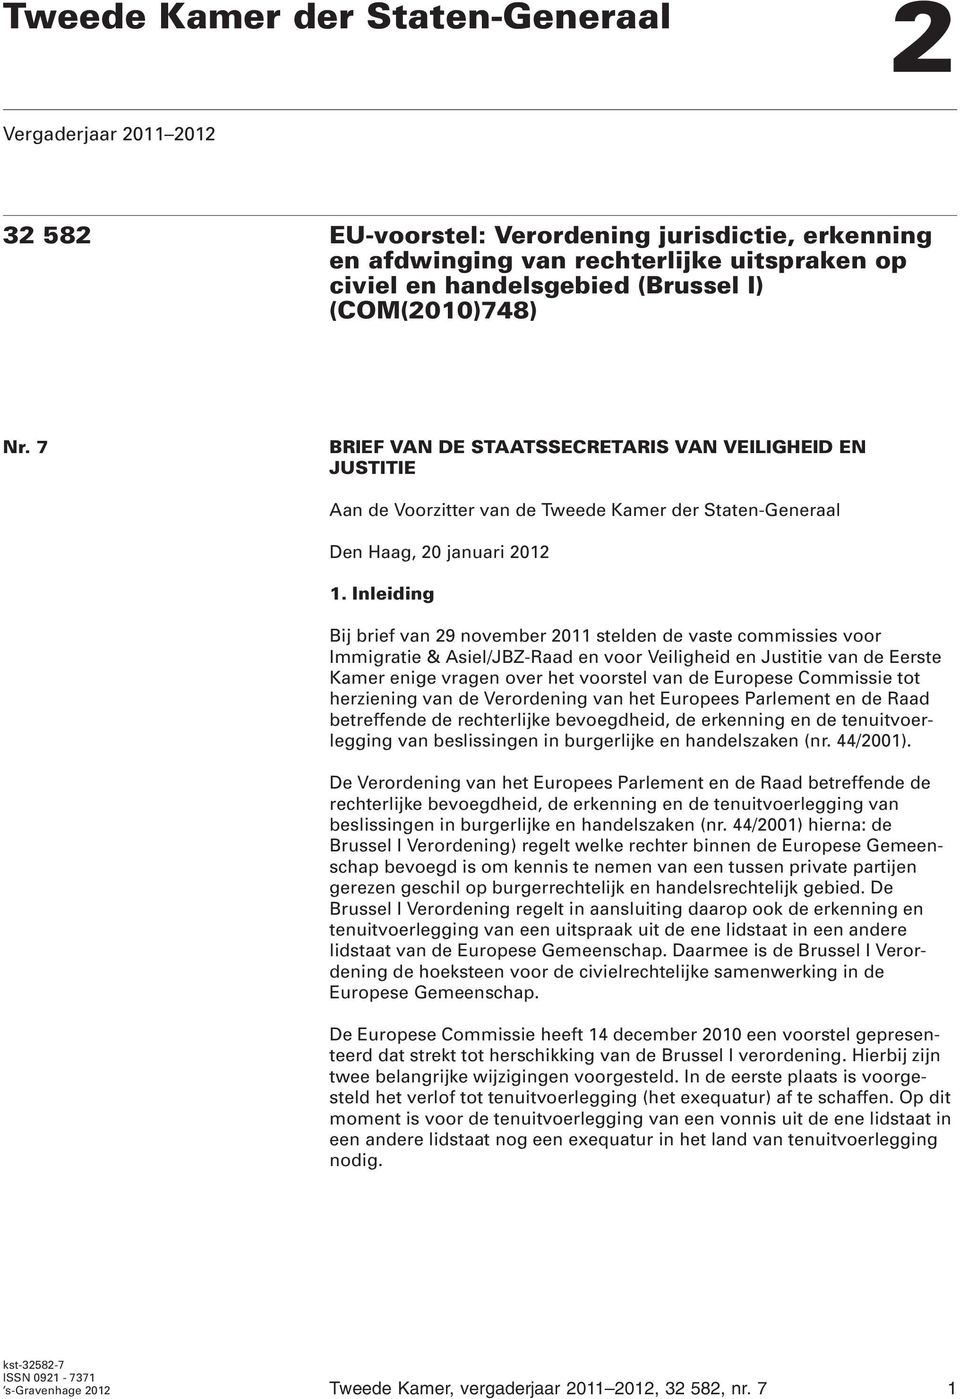 Inleiding Bij brief van 29 november 2011 stelden de vaste commissies voor Immigratie & Asiel/JBZ-Raad en voor Veiligheid en Justitie van de Eerste Kamer enige vragen over het voorstel van de Europese